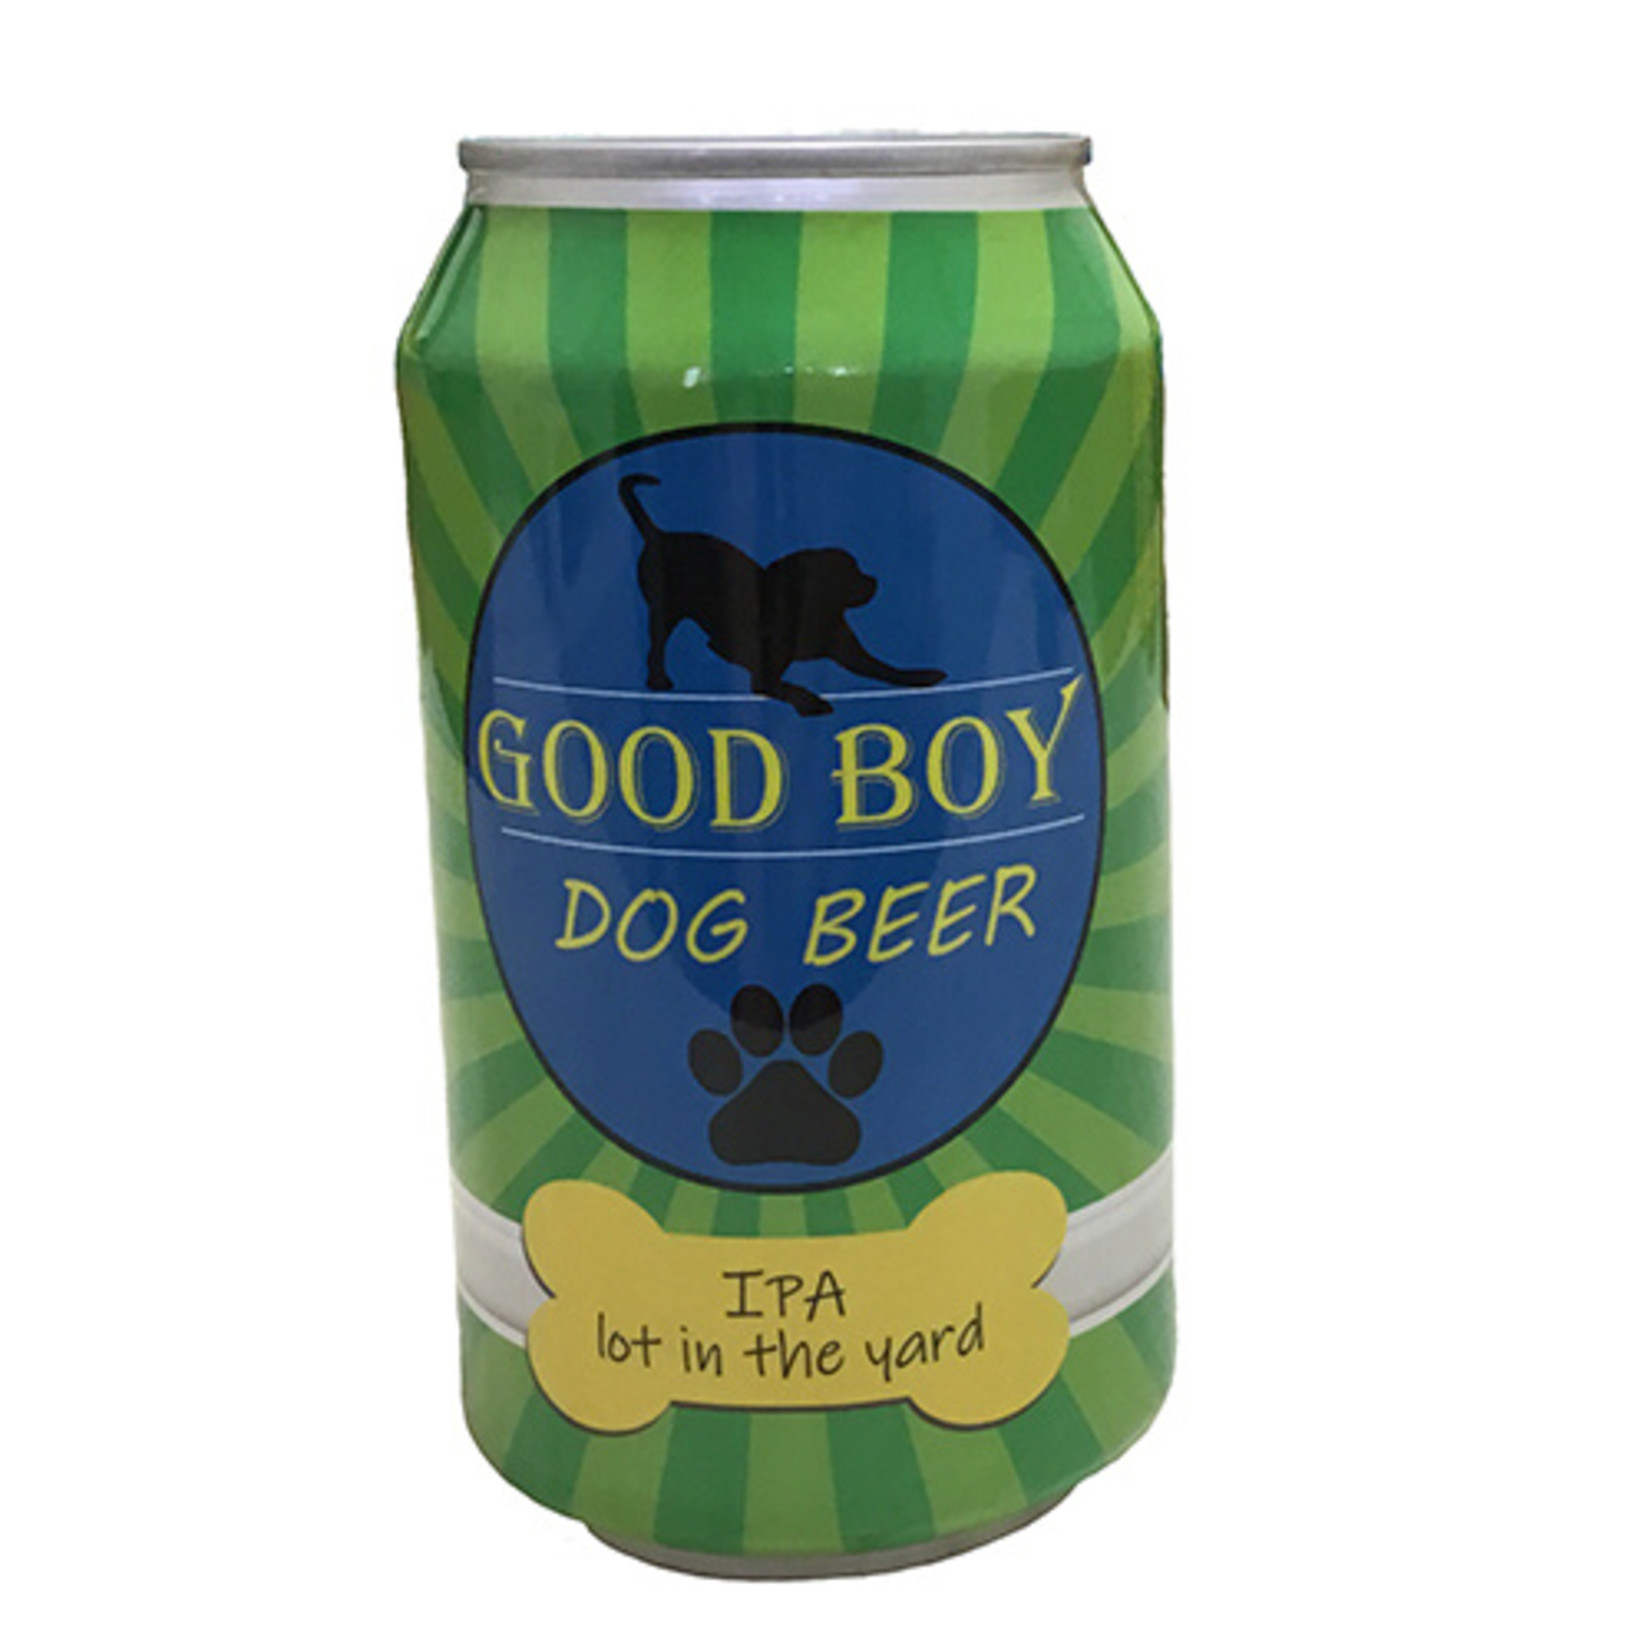 Good Boy Dog Beer Good Boy Dog Beer IPA lot in the yard